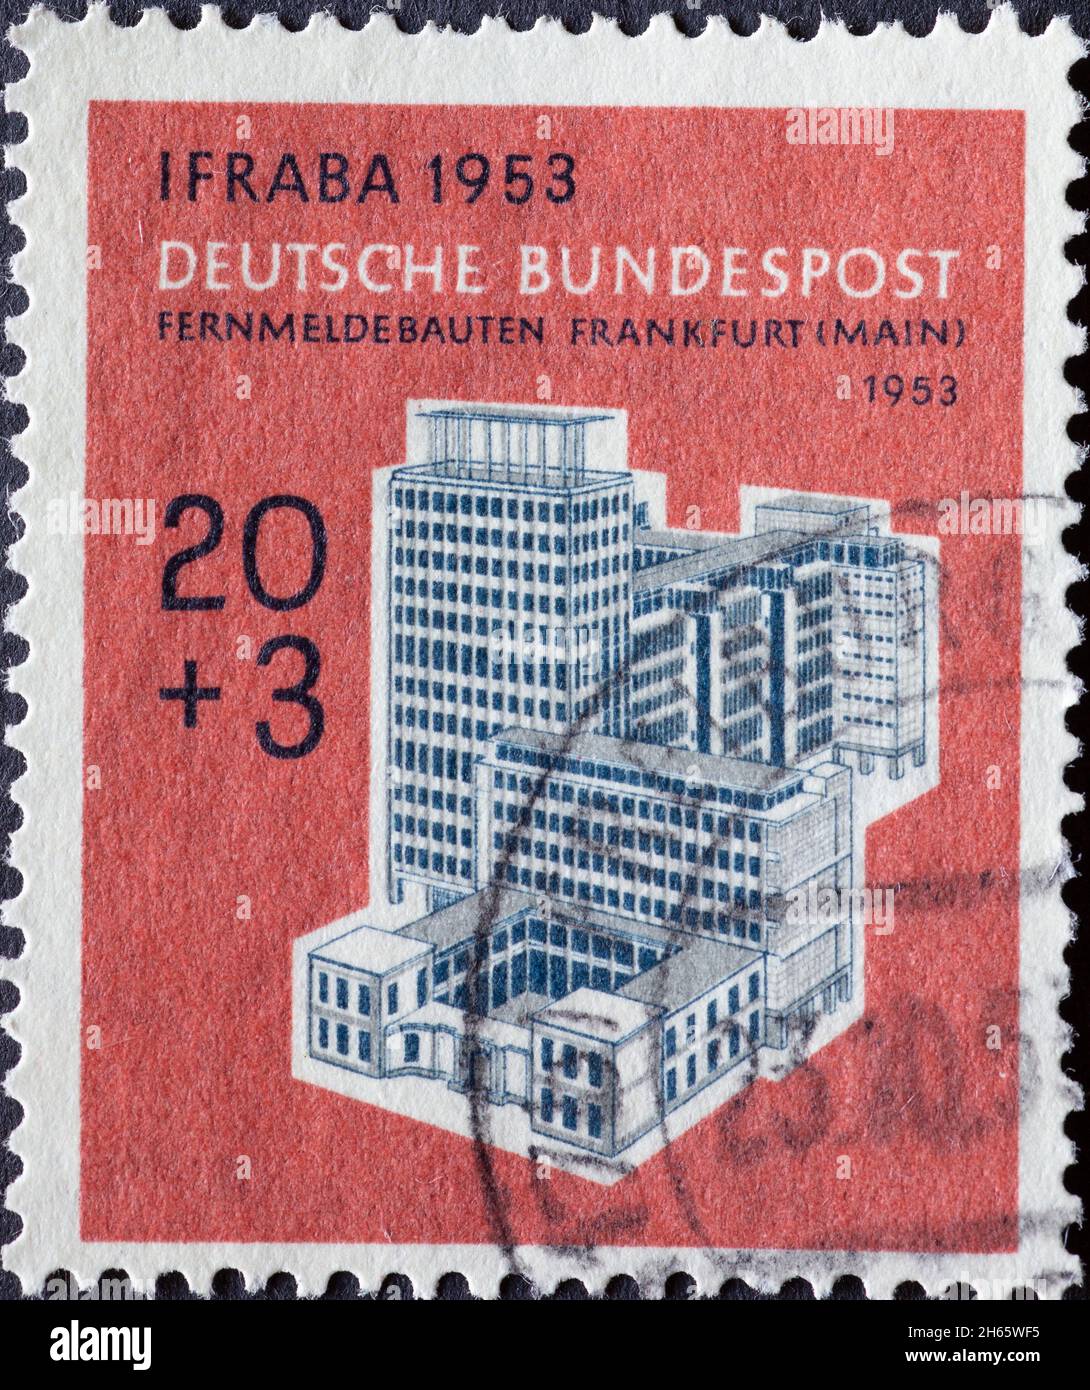 ALLEMAGNE - VERS 1951Le bâtiment de la compagnie de téléphone à Francfort (rivière main) Allemagne 1953 peut être vu sur ce timbre-poste imprimé en Allemagne.Le bon de commande Banque D'Images